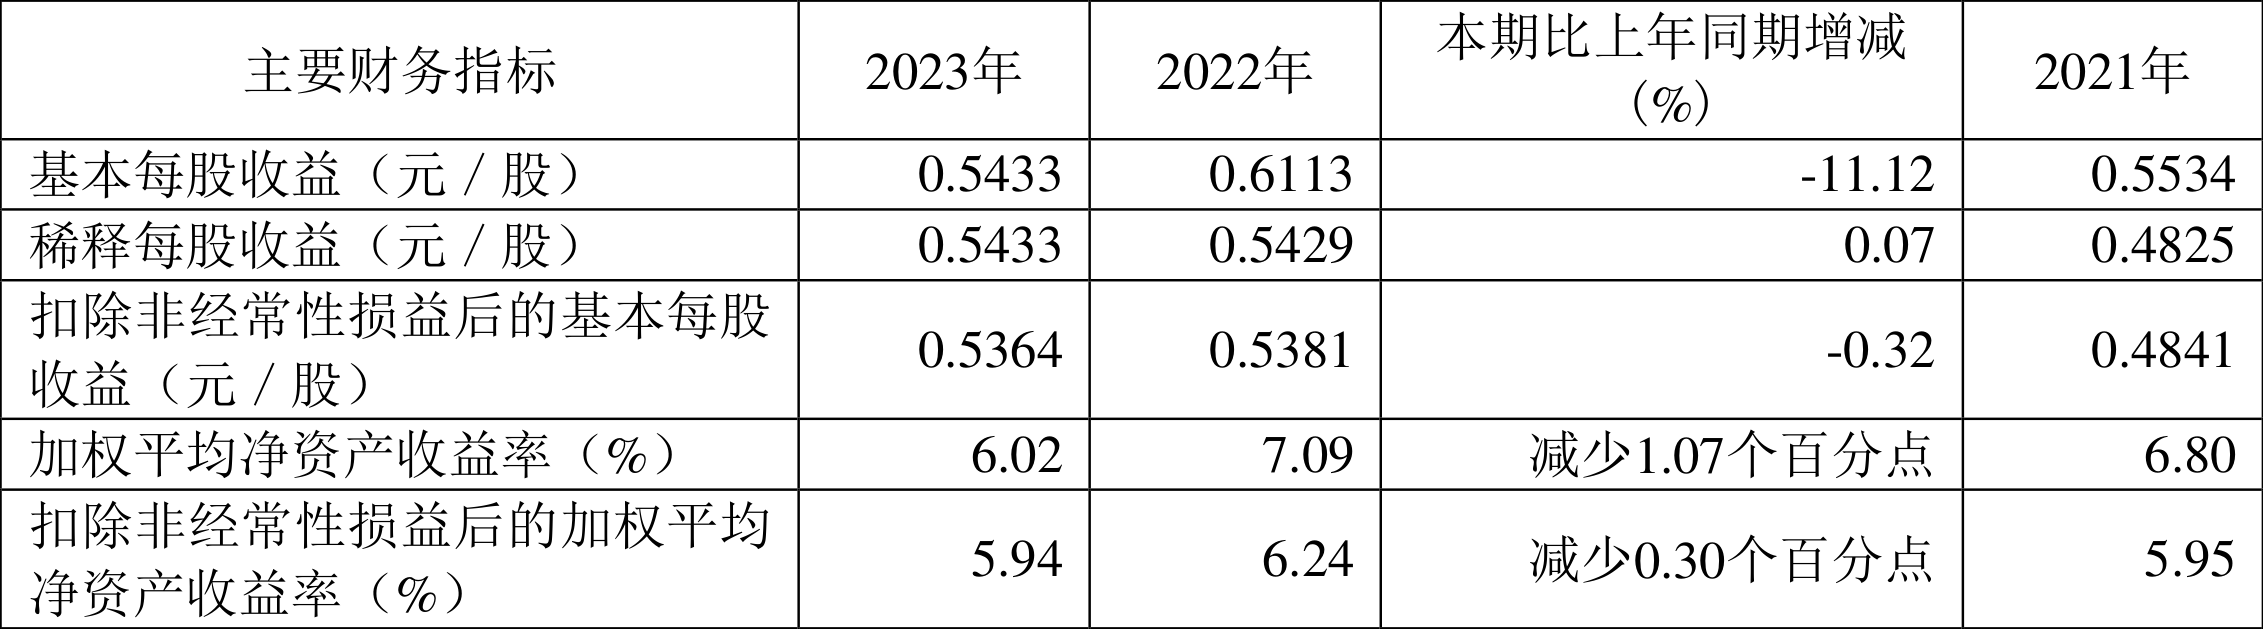 国药现代：ROE创上市以来新低 2023年净利同比增长10.21% 拟10派1元